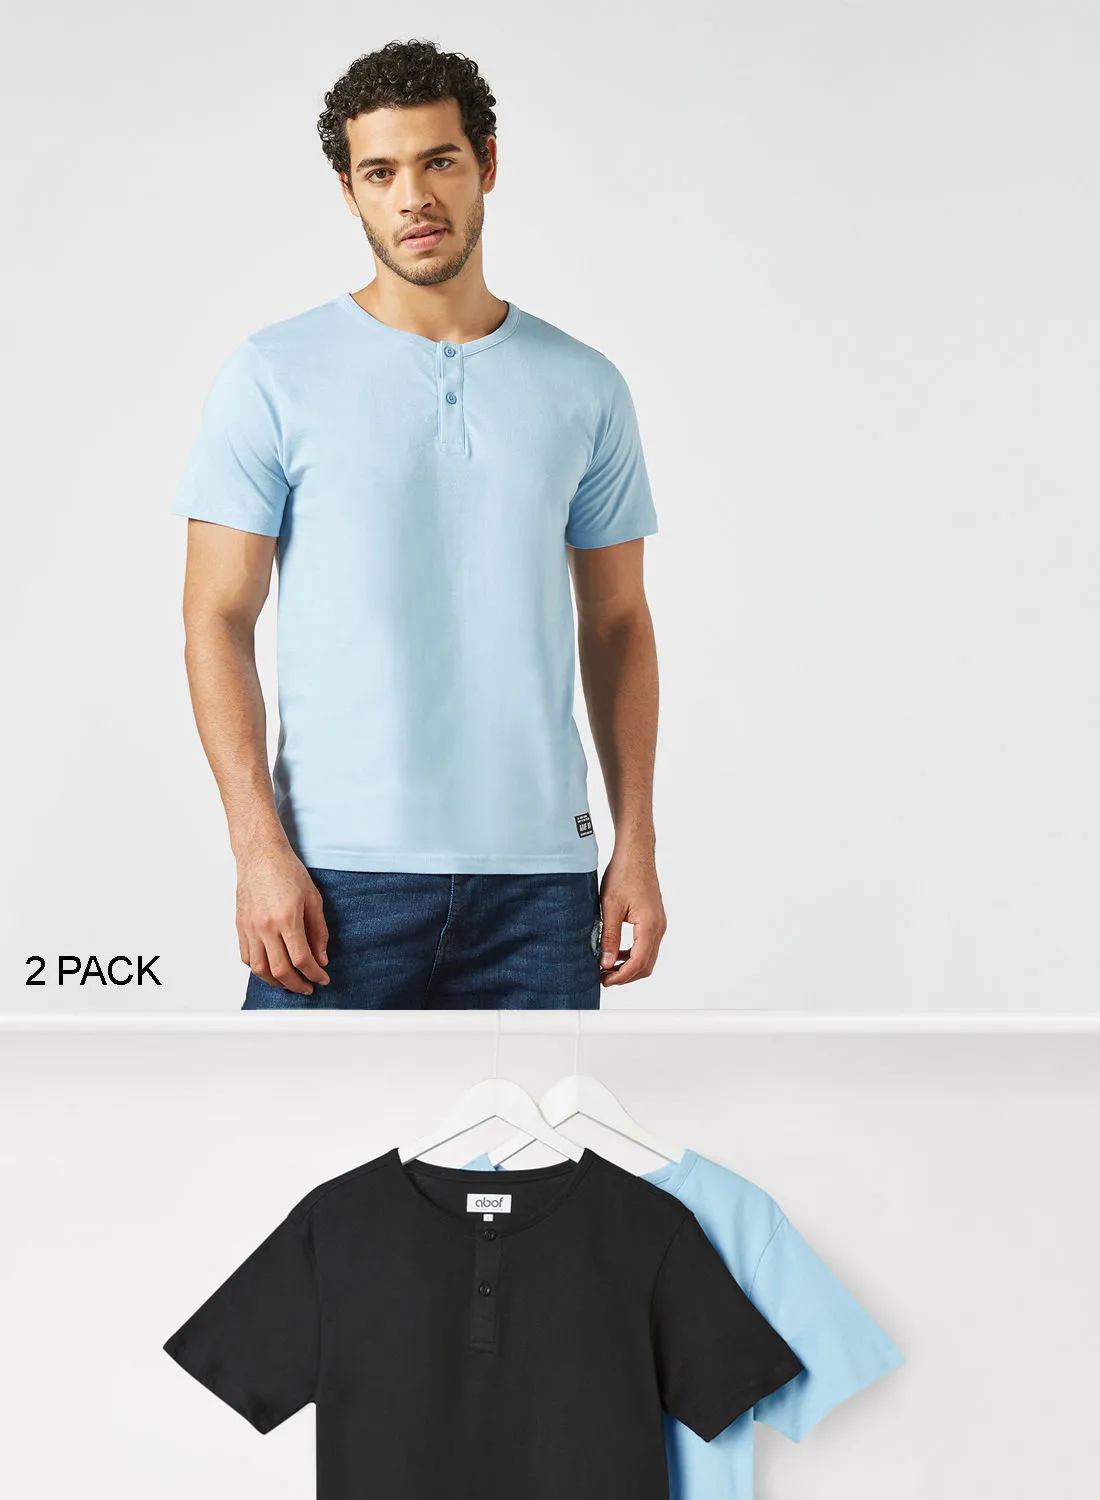 ABOF 2 Pack Of Henley Neck T-Shirt Light Blue/Black